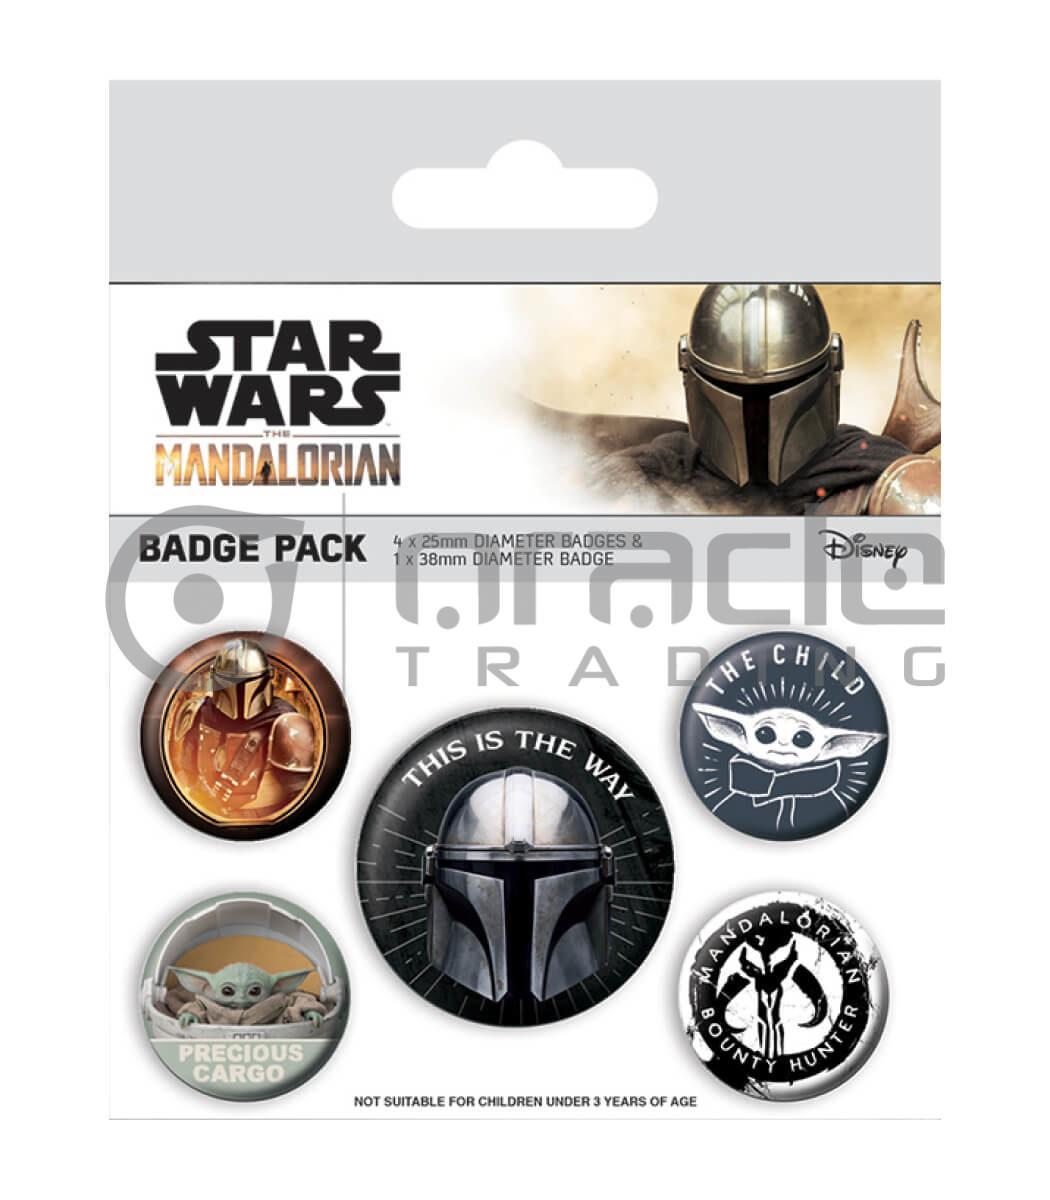 Star Wars: The Mandalorian Badge Pack